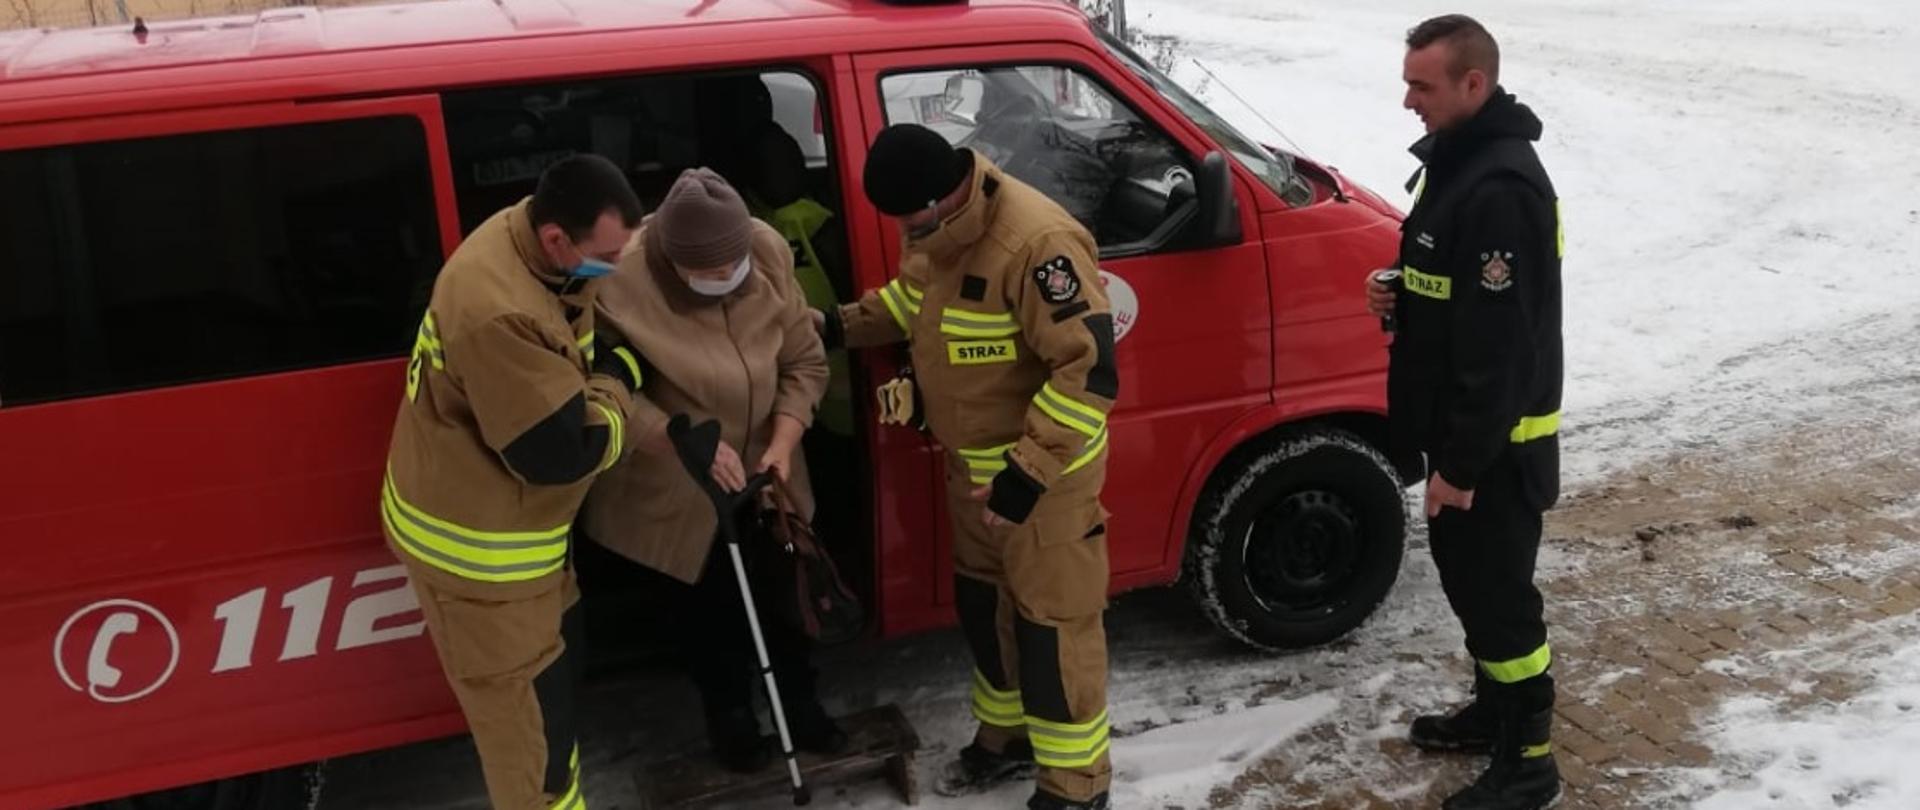 Obraz przestawia strażaków pomagających osobie starszej wysiąść z samochodu pożarniczego.